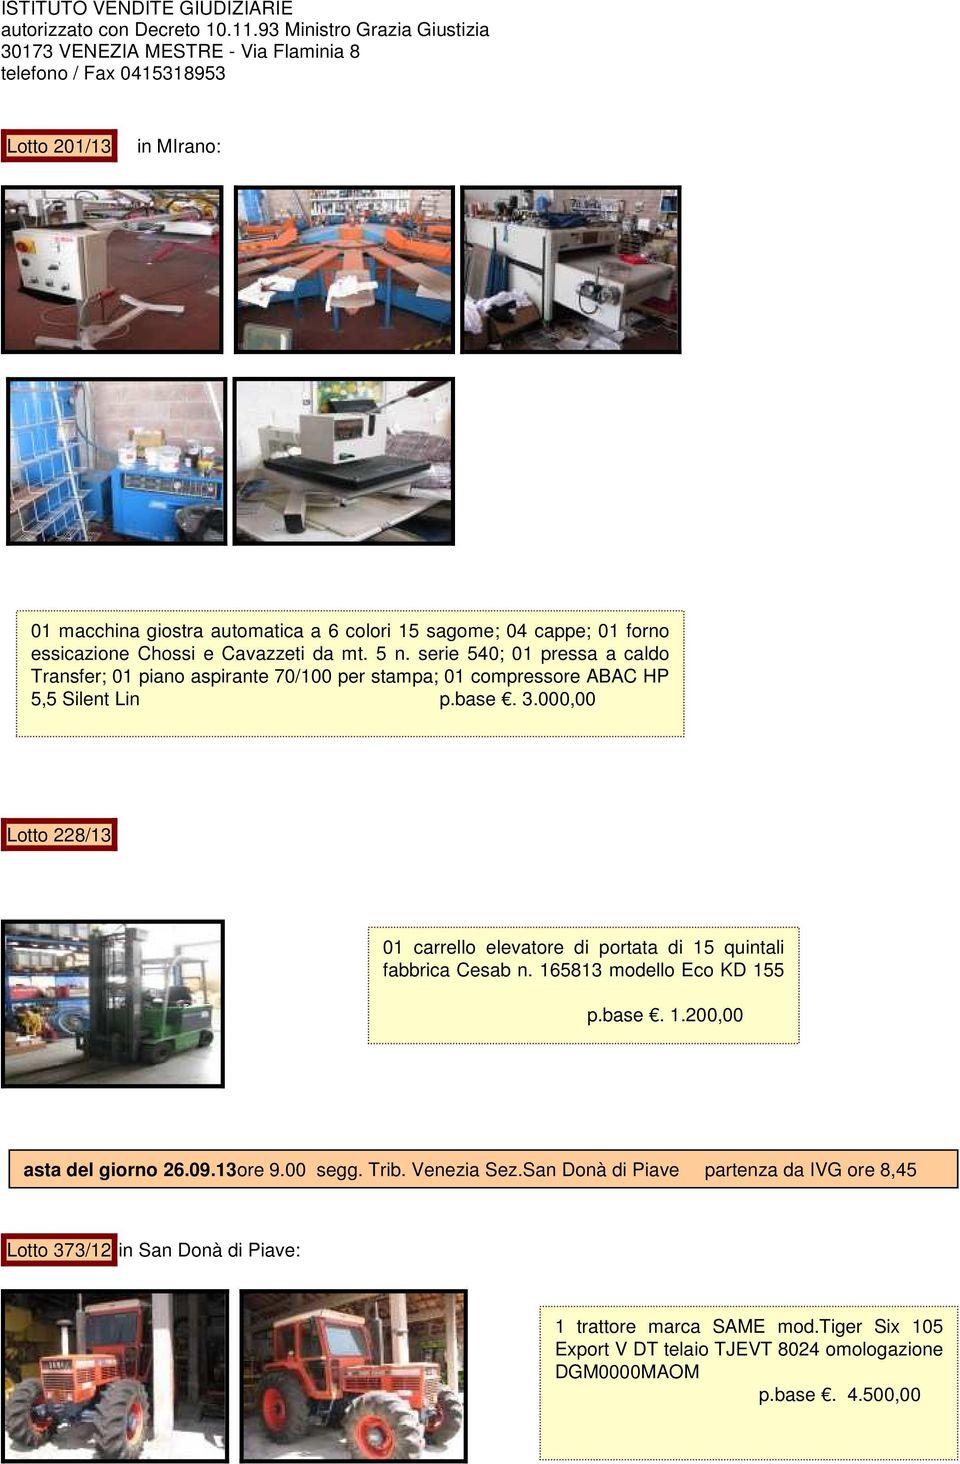 000,00 Lotto 228/13 01 carrello elevatore di portata di 15 quintali fabbrica Cesab n. 165813 modello Eco KD 155 p.base. 1.200,00 asta del giorno 26.09.13ore 9.